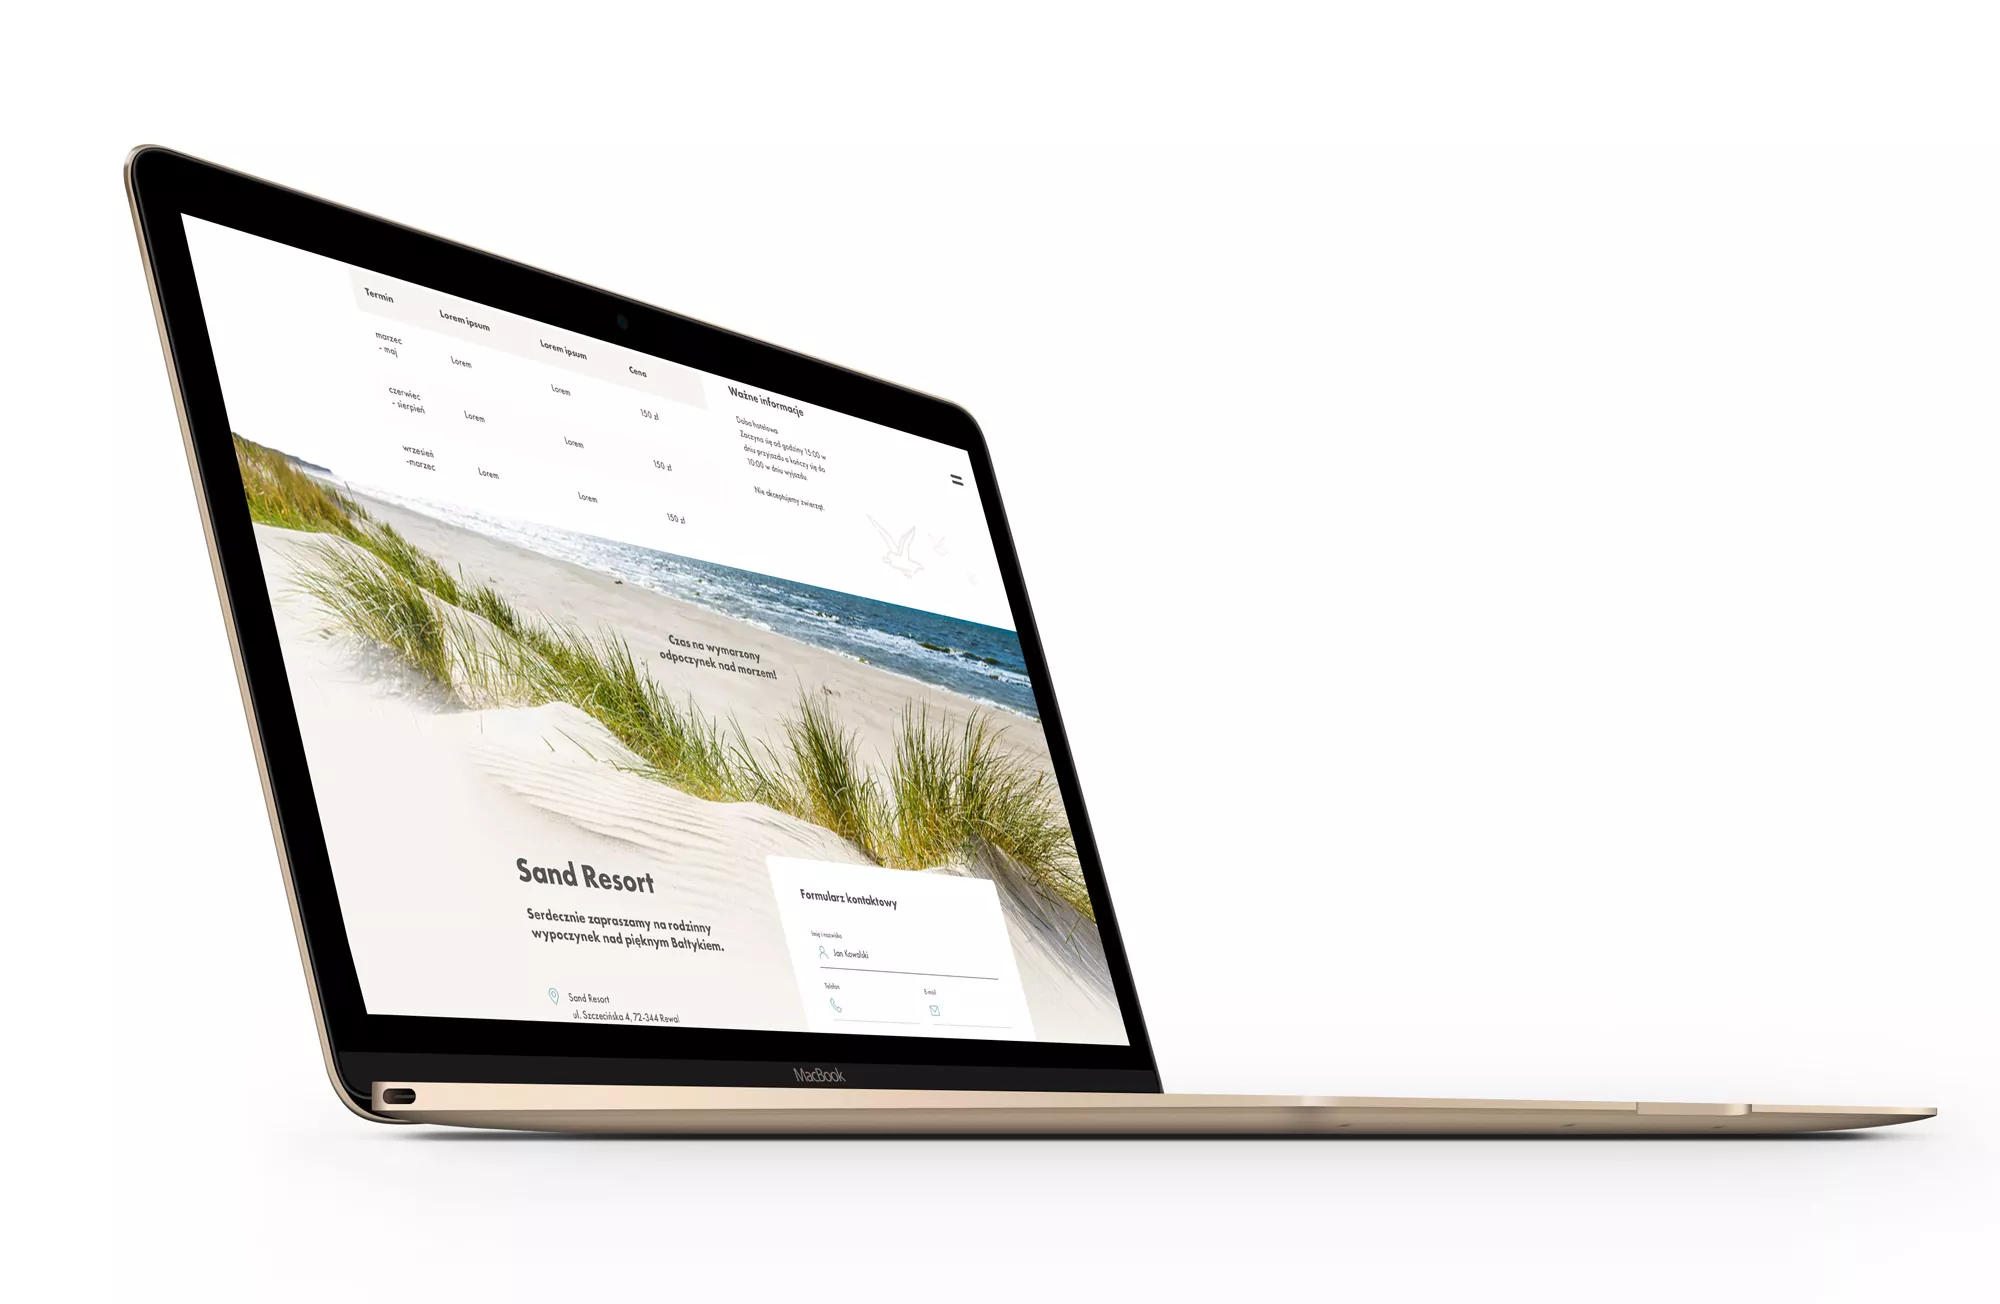 Sand Resort - strona internetowa, projekt dla apartamentów w Rewalu nad Bałtykiem widok na laptopie